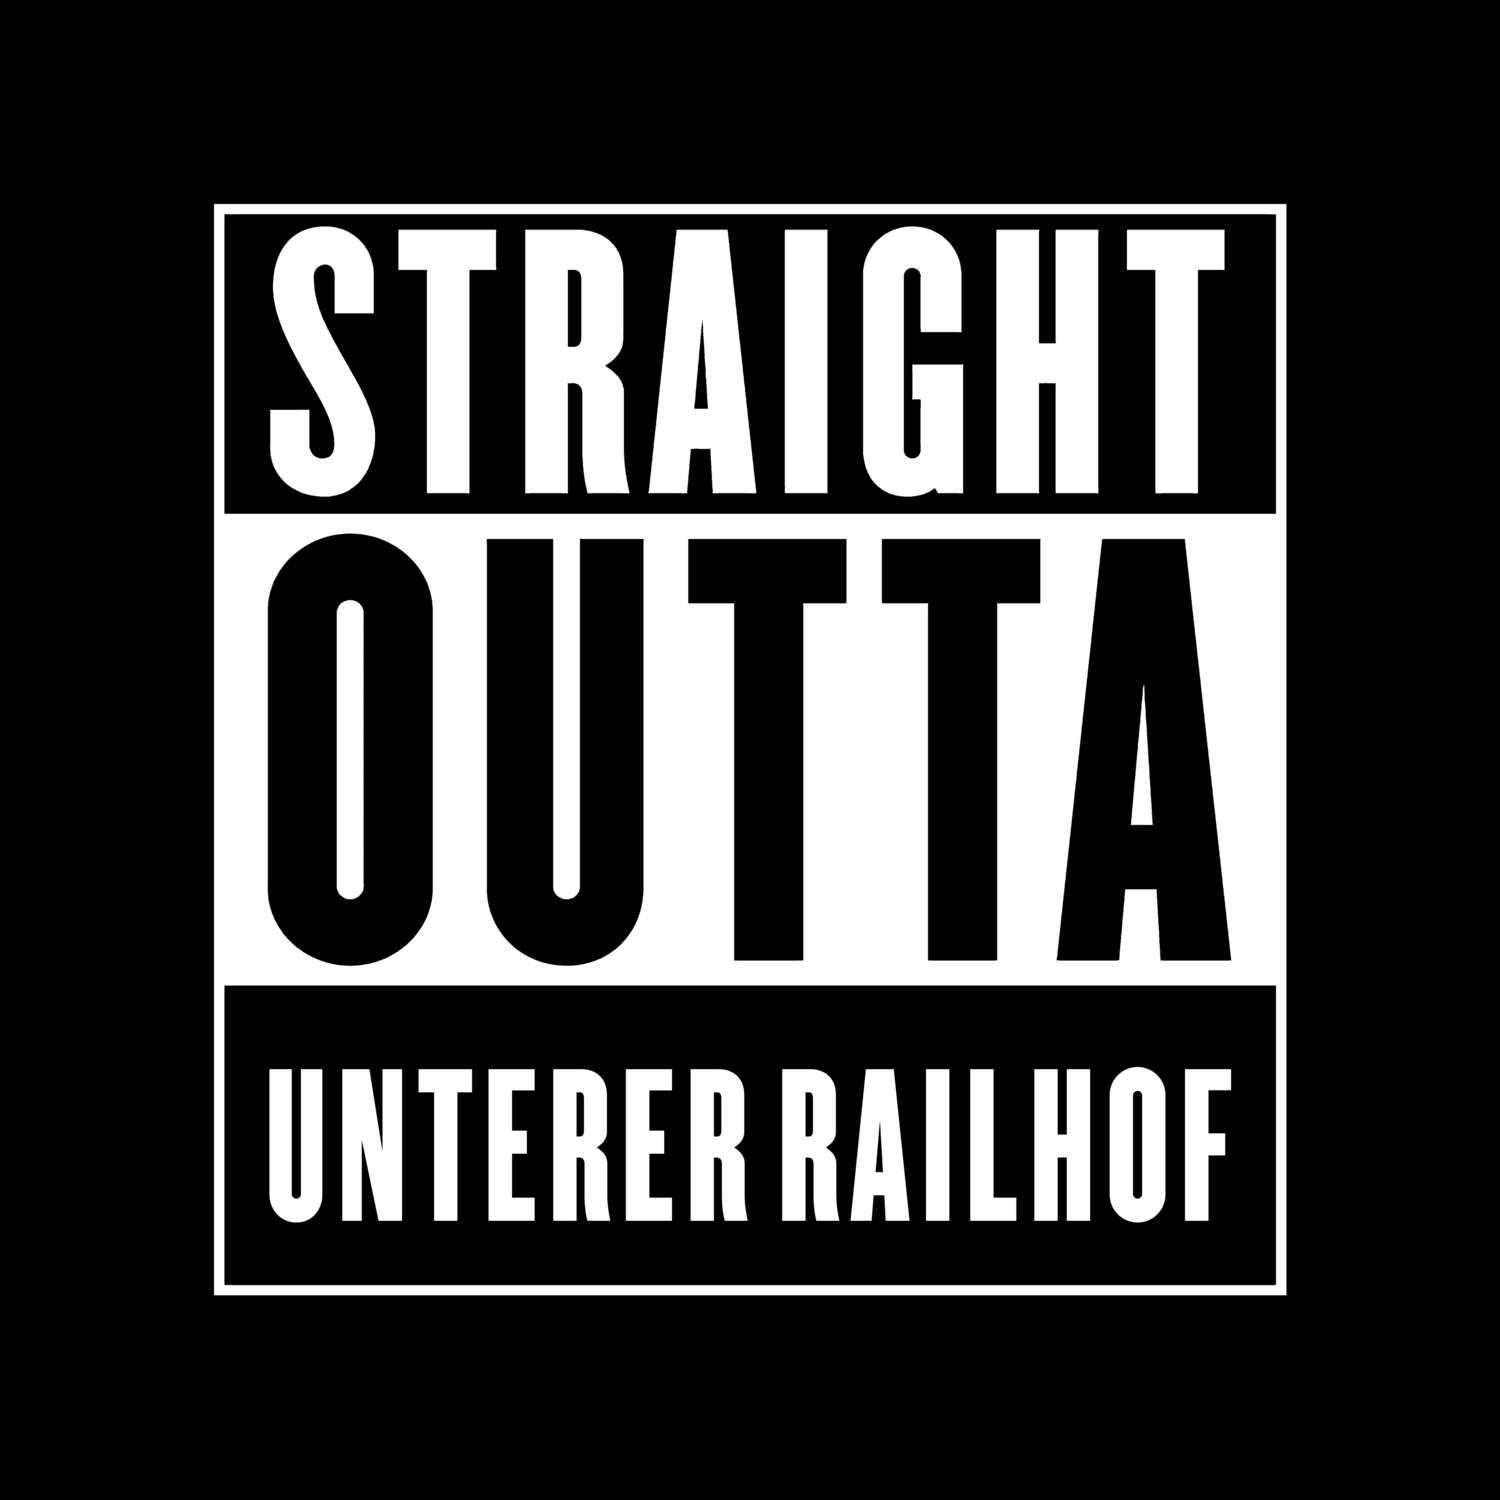 Unterer Railhof T-Shirt »Straight Outta«